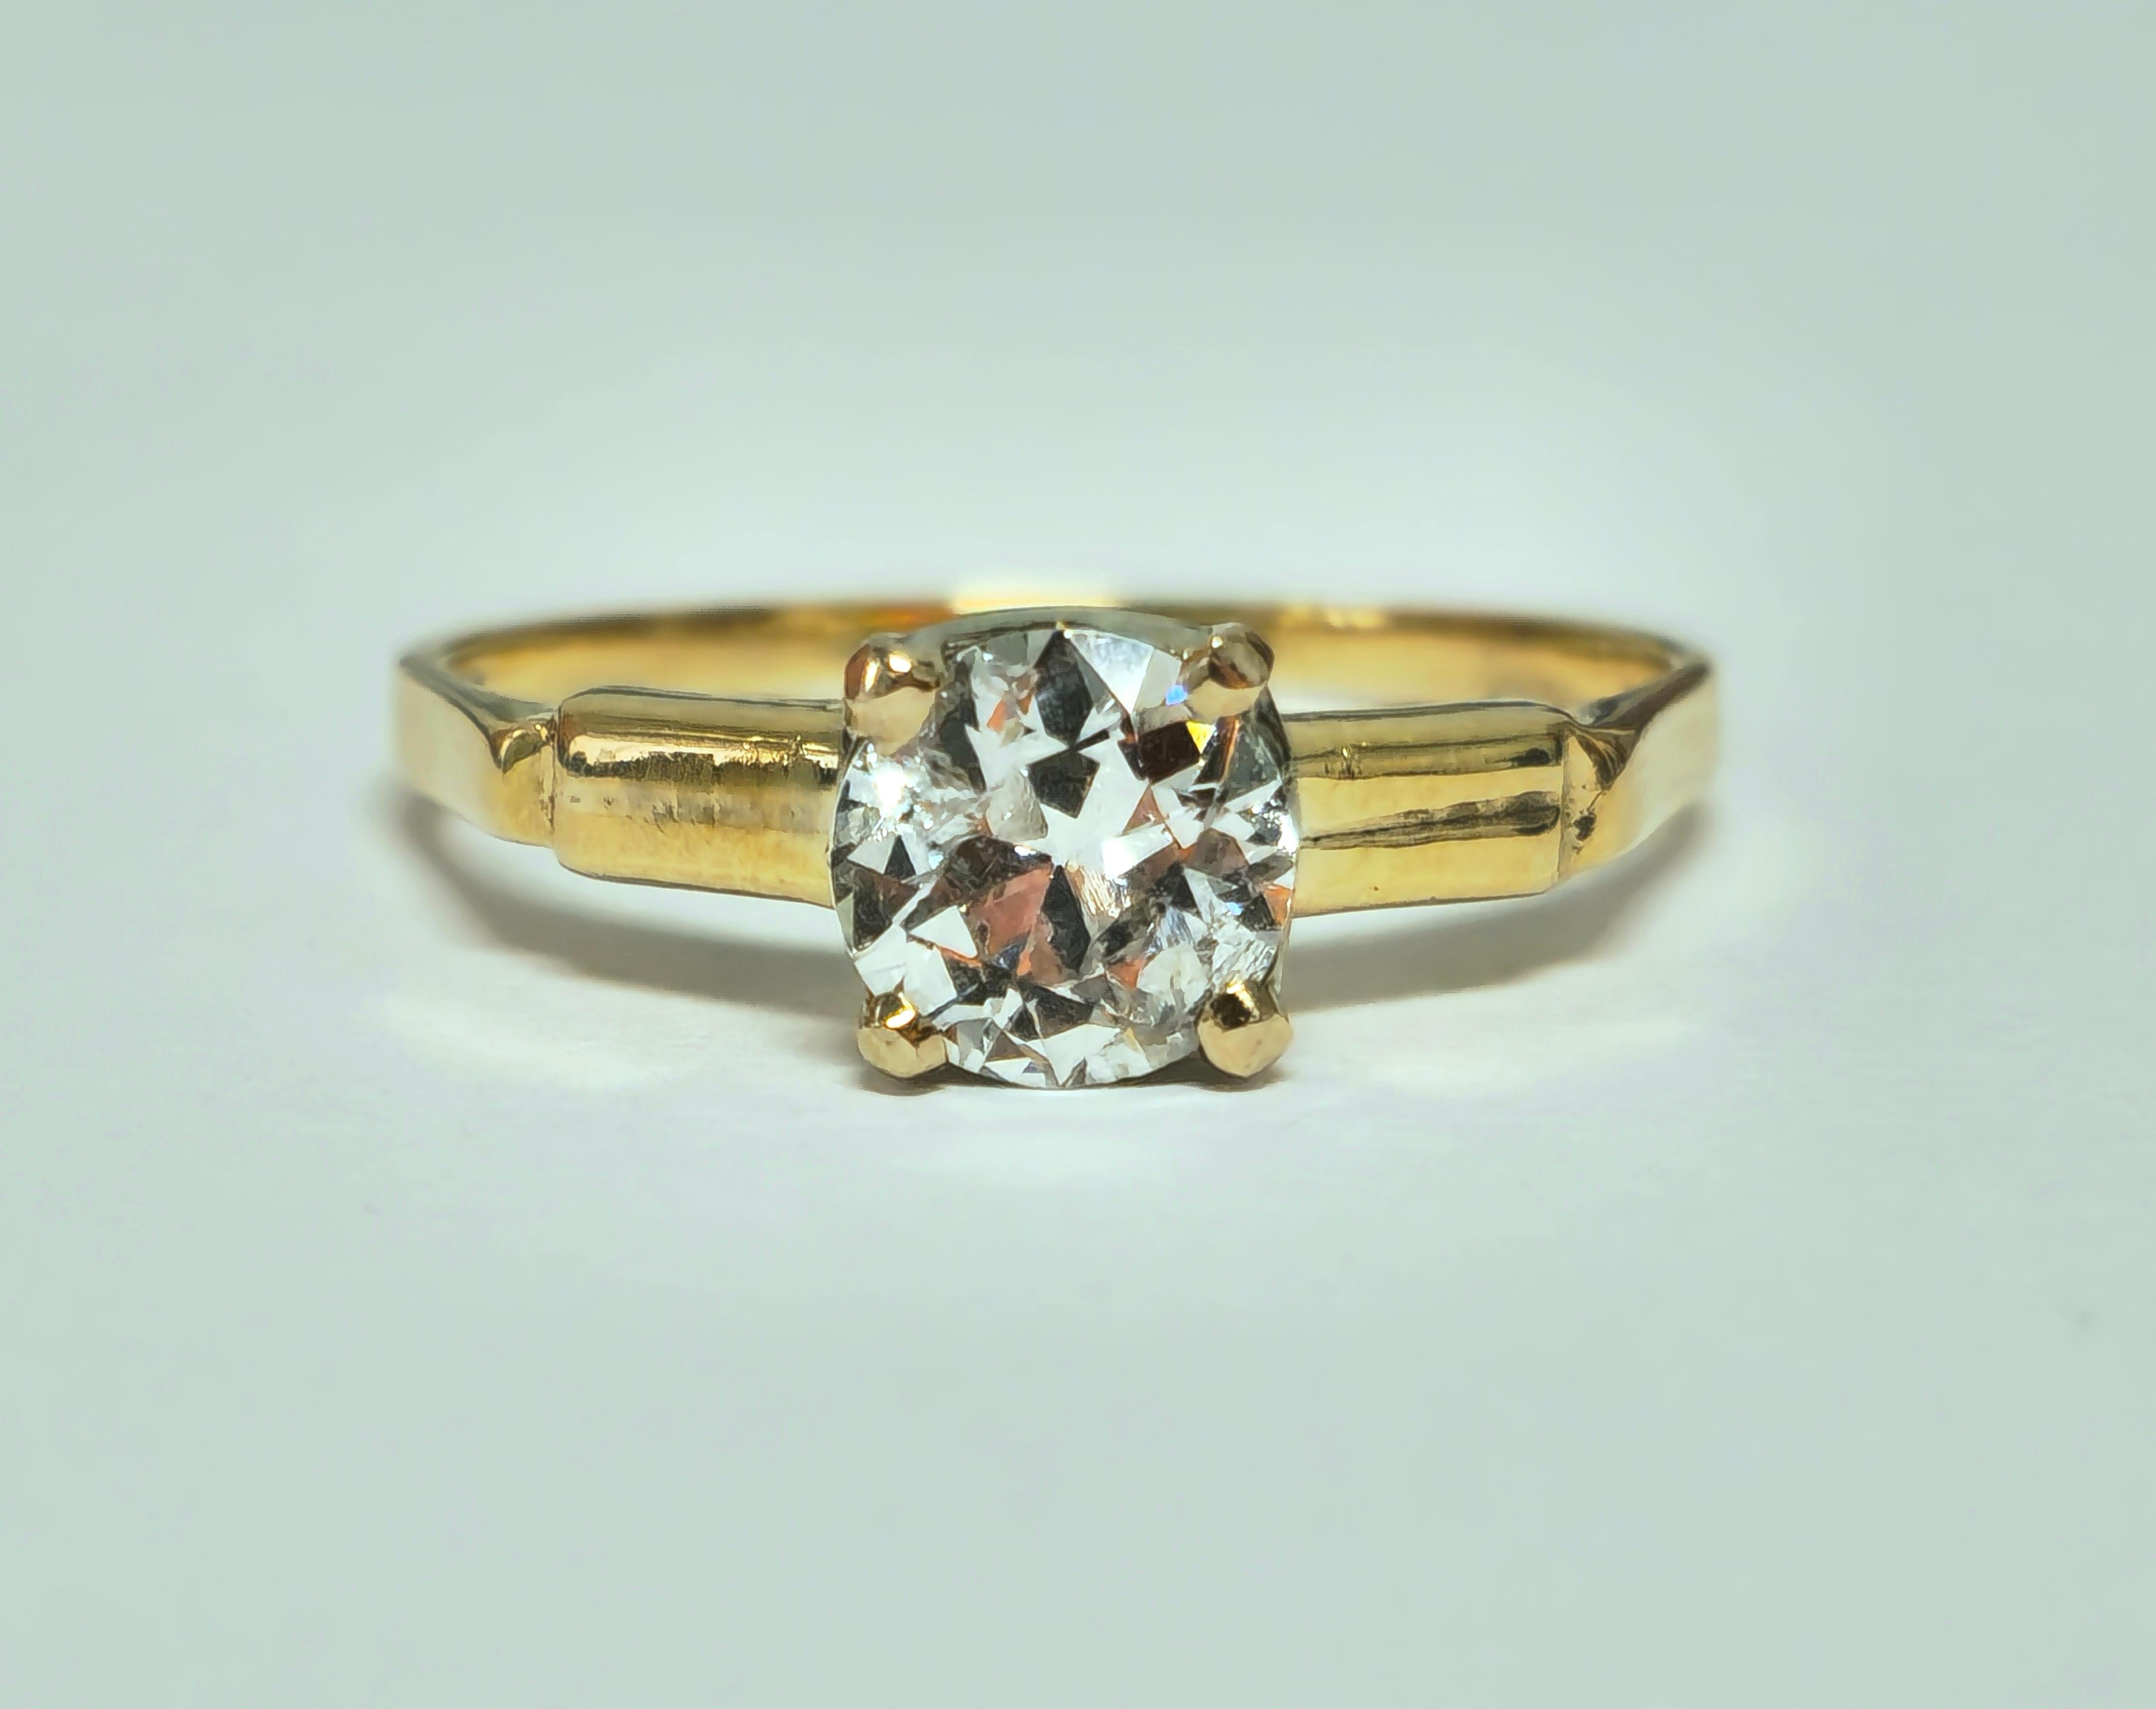 Fabriquée en or jaune 14k, cette bague en diamant vintage est ornée d'un charmant diamant taille unique de 1,03 carat, qui ajoute une touche d'élégance intemporelle. Avec une pureté SI1 et une couleur G, le diamant met en valeur sa beauté naturelle.